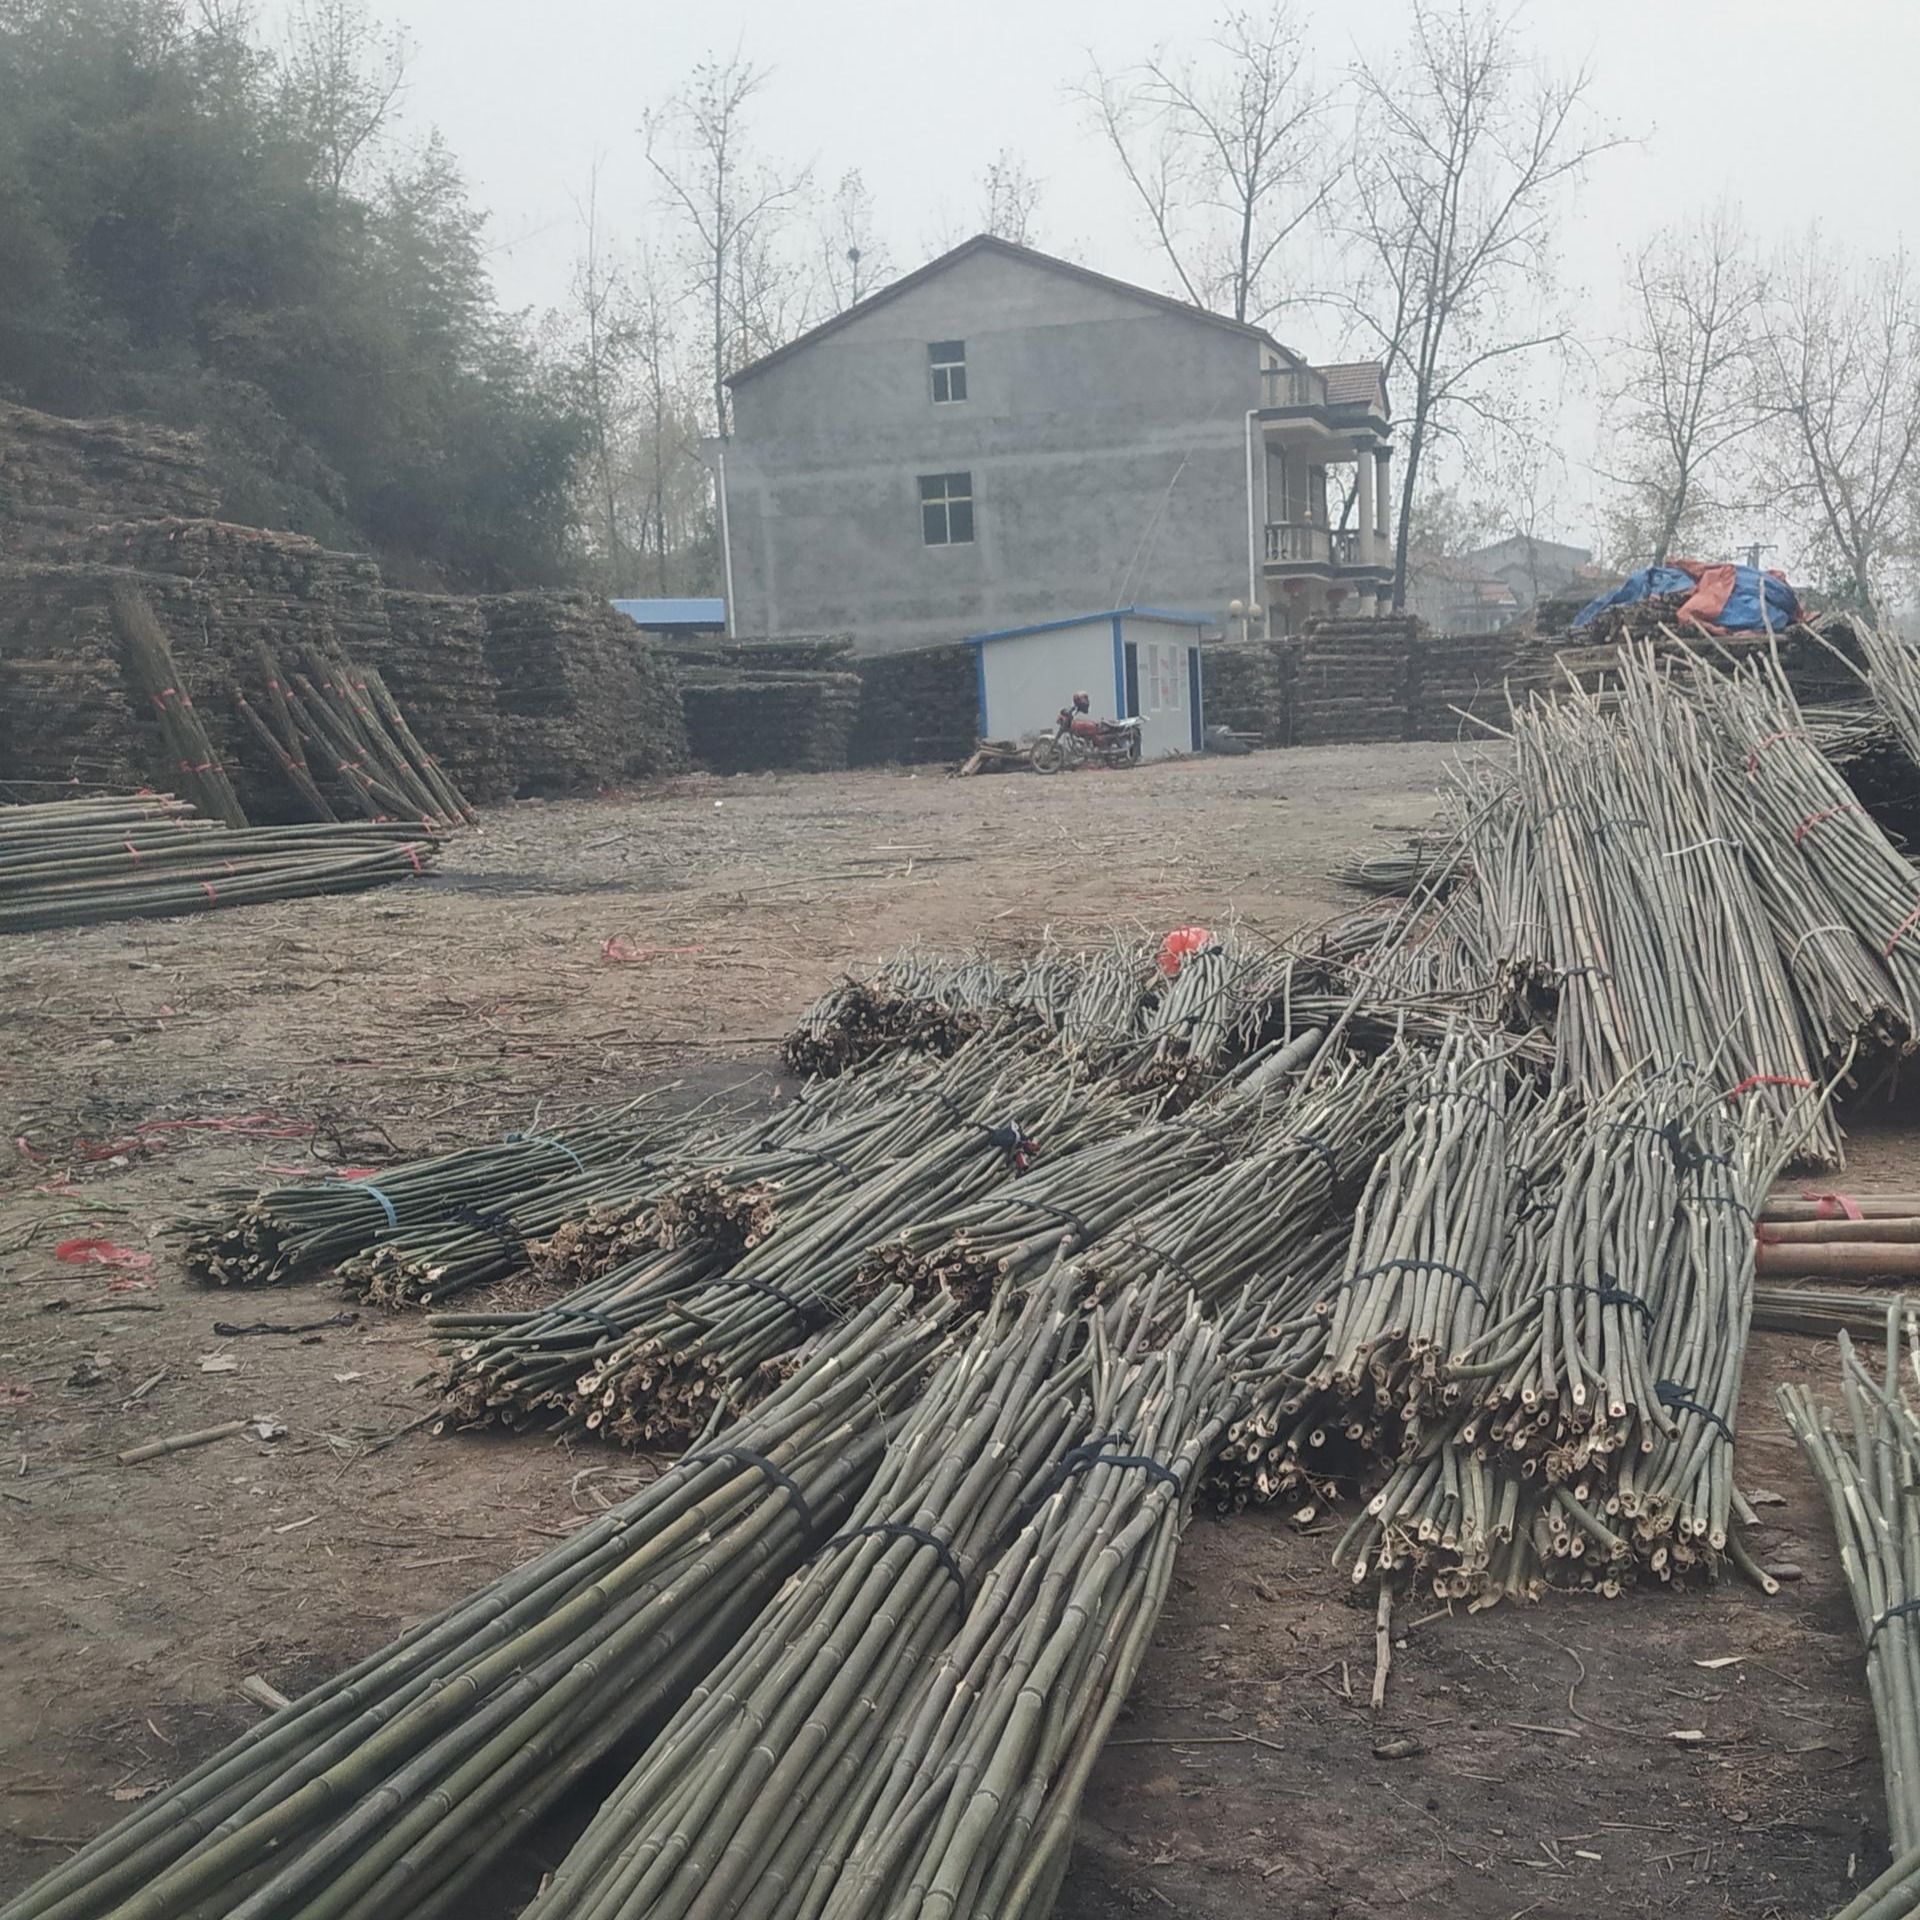 竹竿批发 产地小竹竿2.2米至3米 大竹竿批发4米至12米